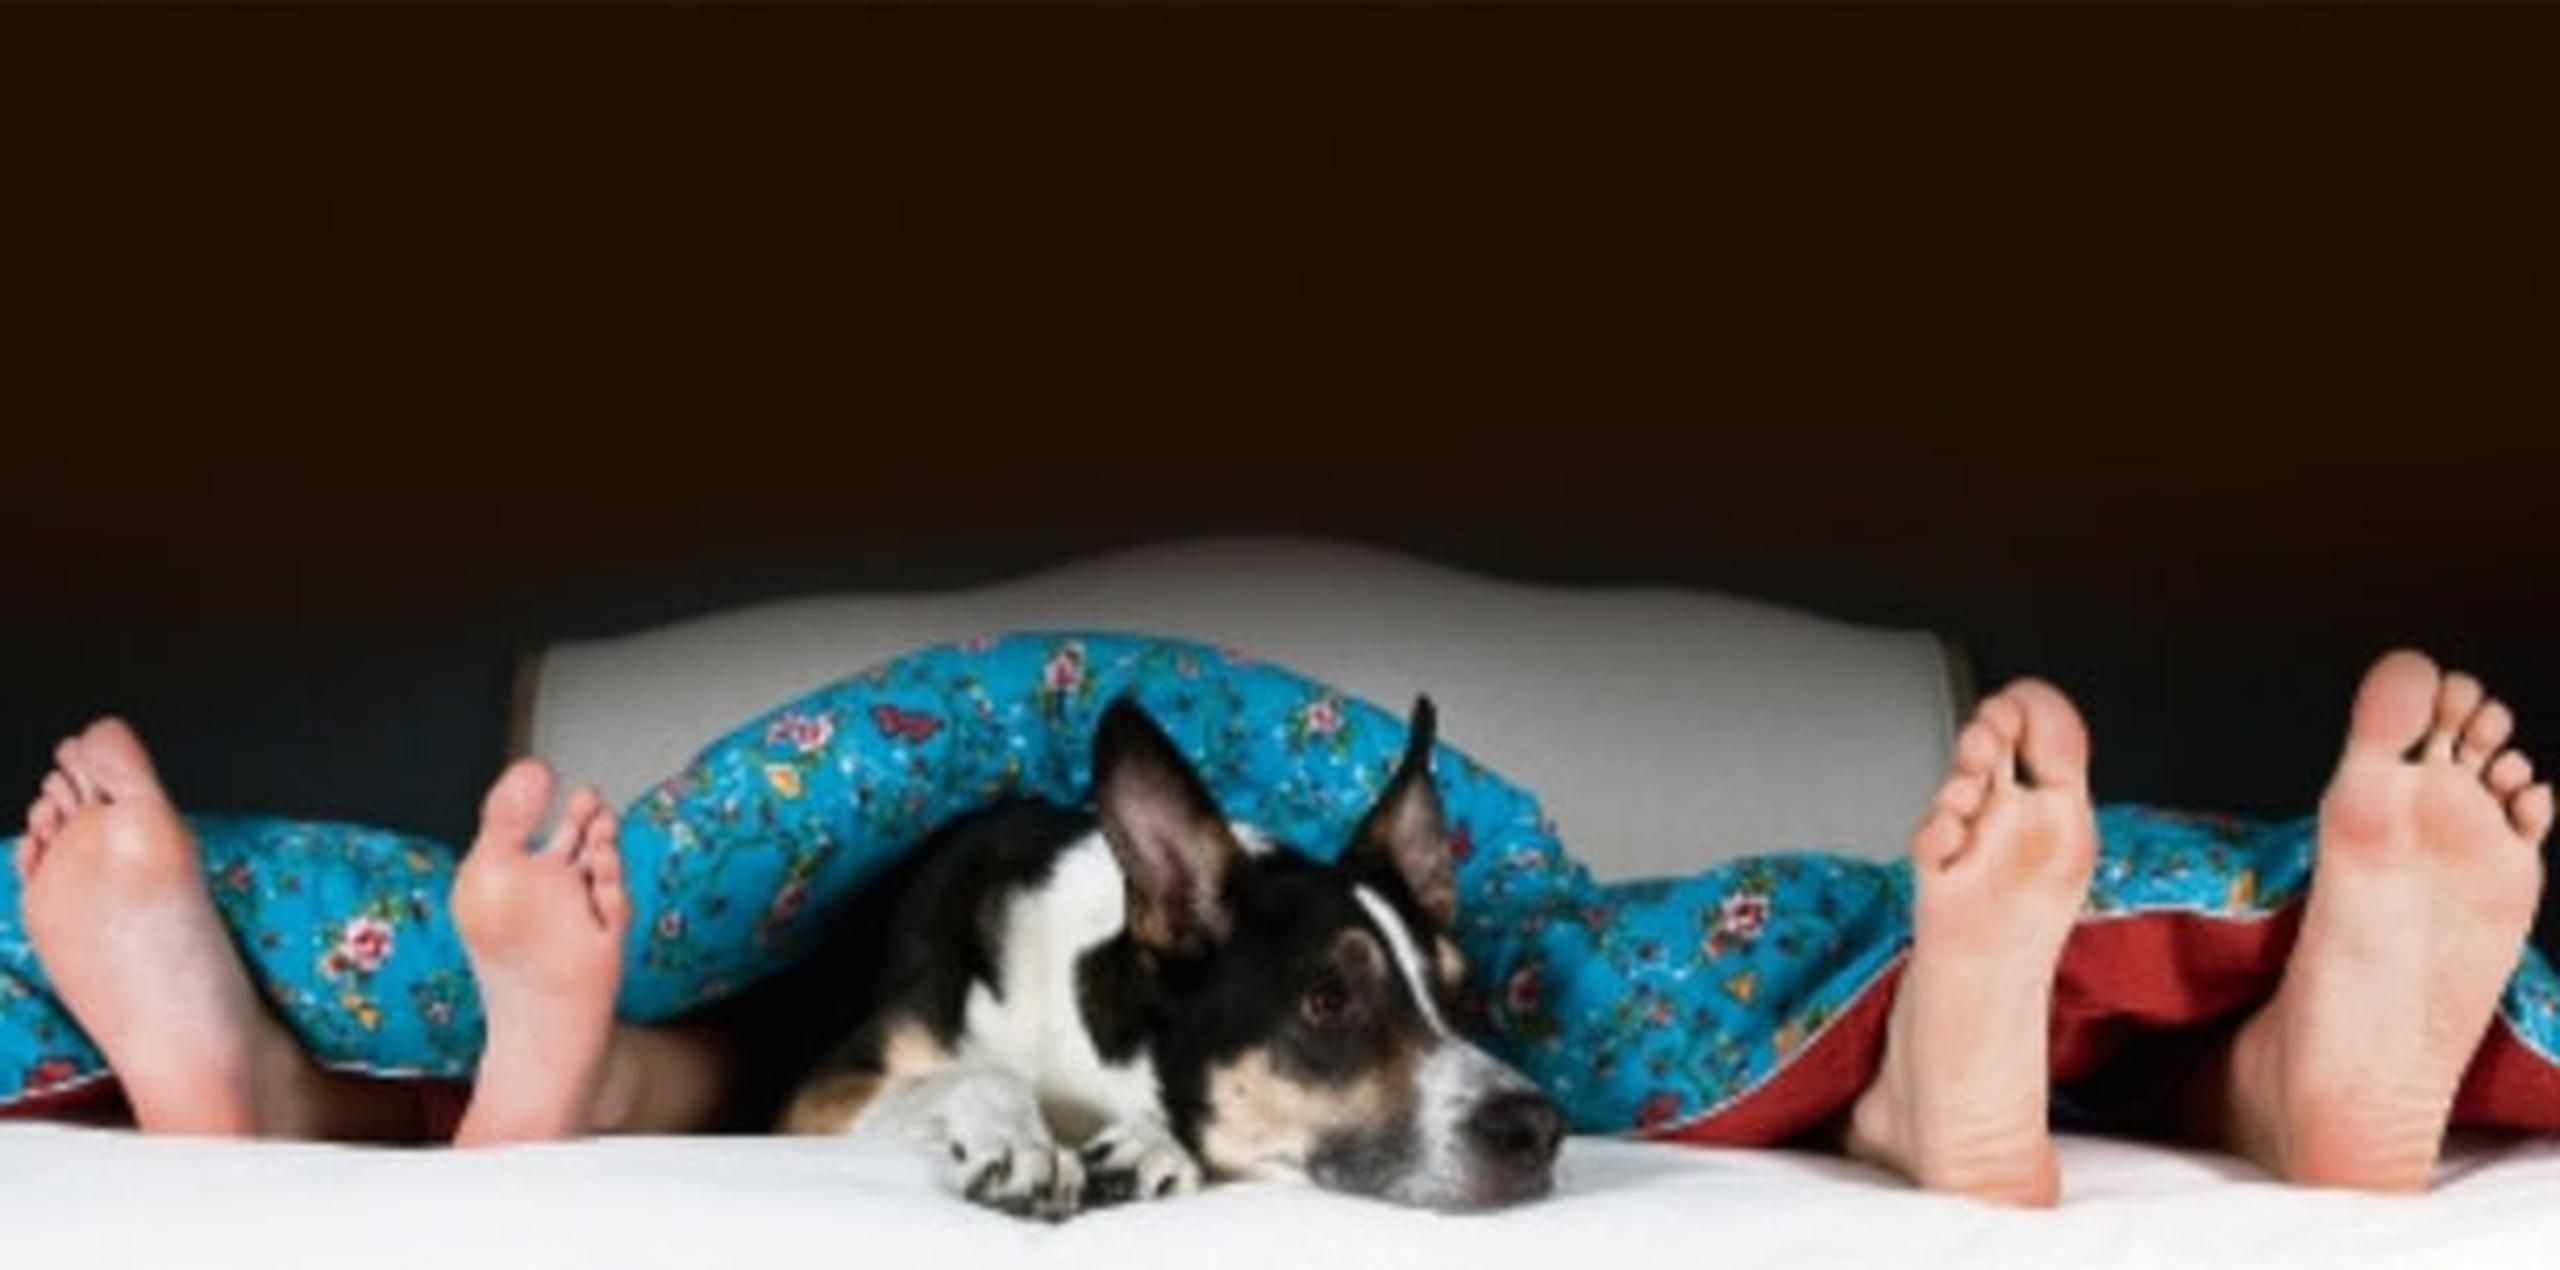 Si las dos personas están de acuerdo con llevar a la mascota a dormir con ellos, no debe presentarse ningún problema a largo plazo. (Archivo)